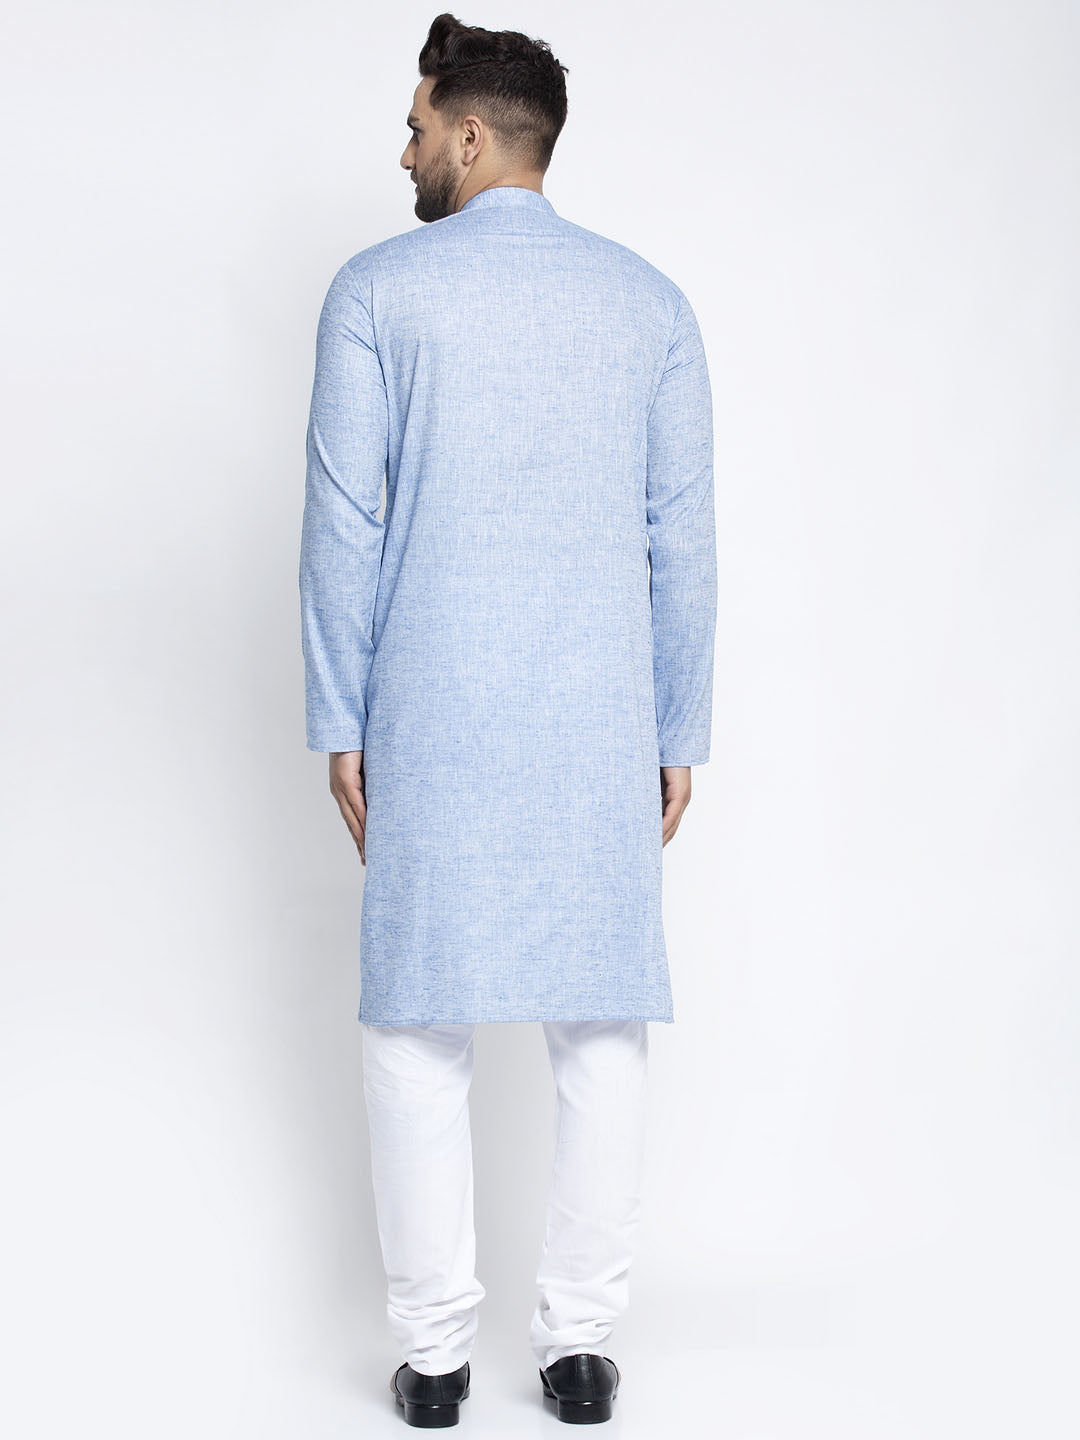 Jompers Men Blue & White Self Design Kurta with Pyjamas